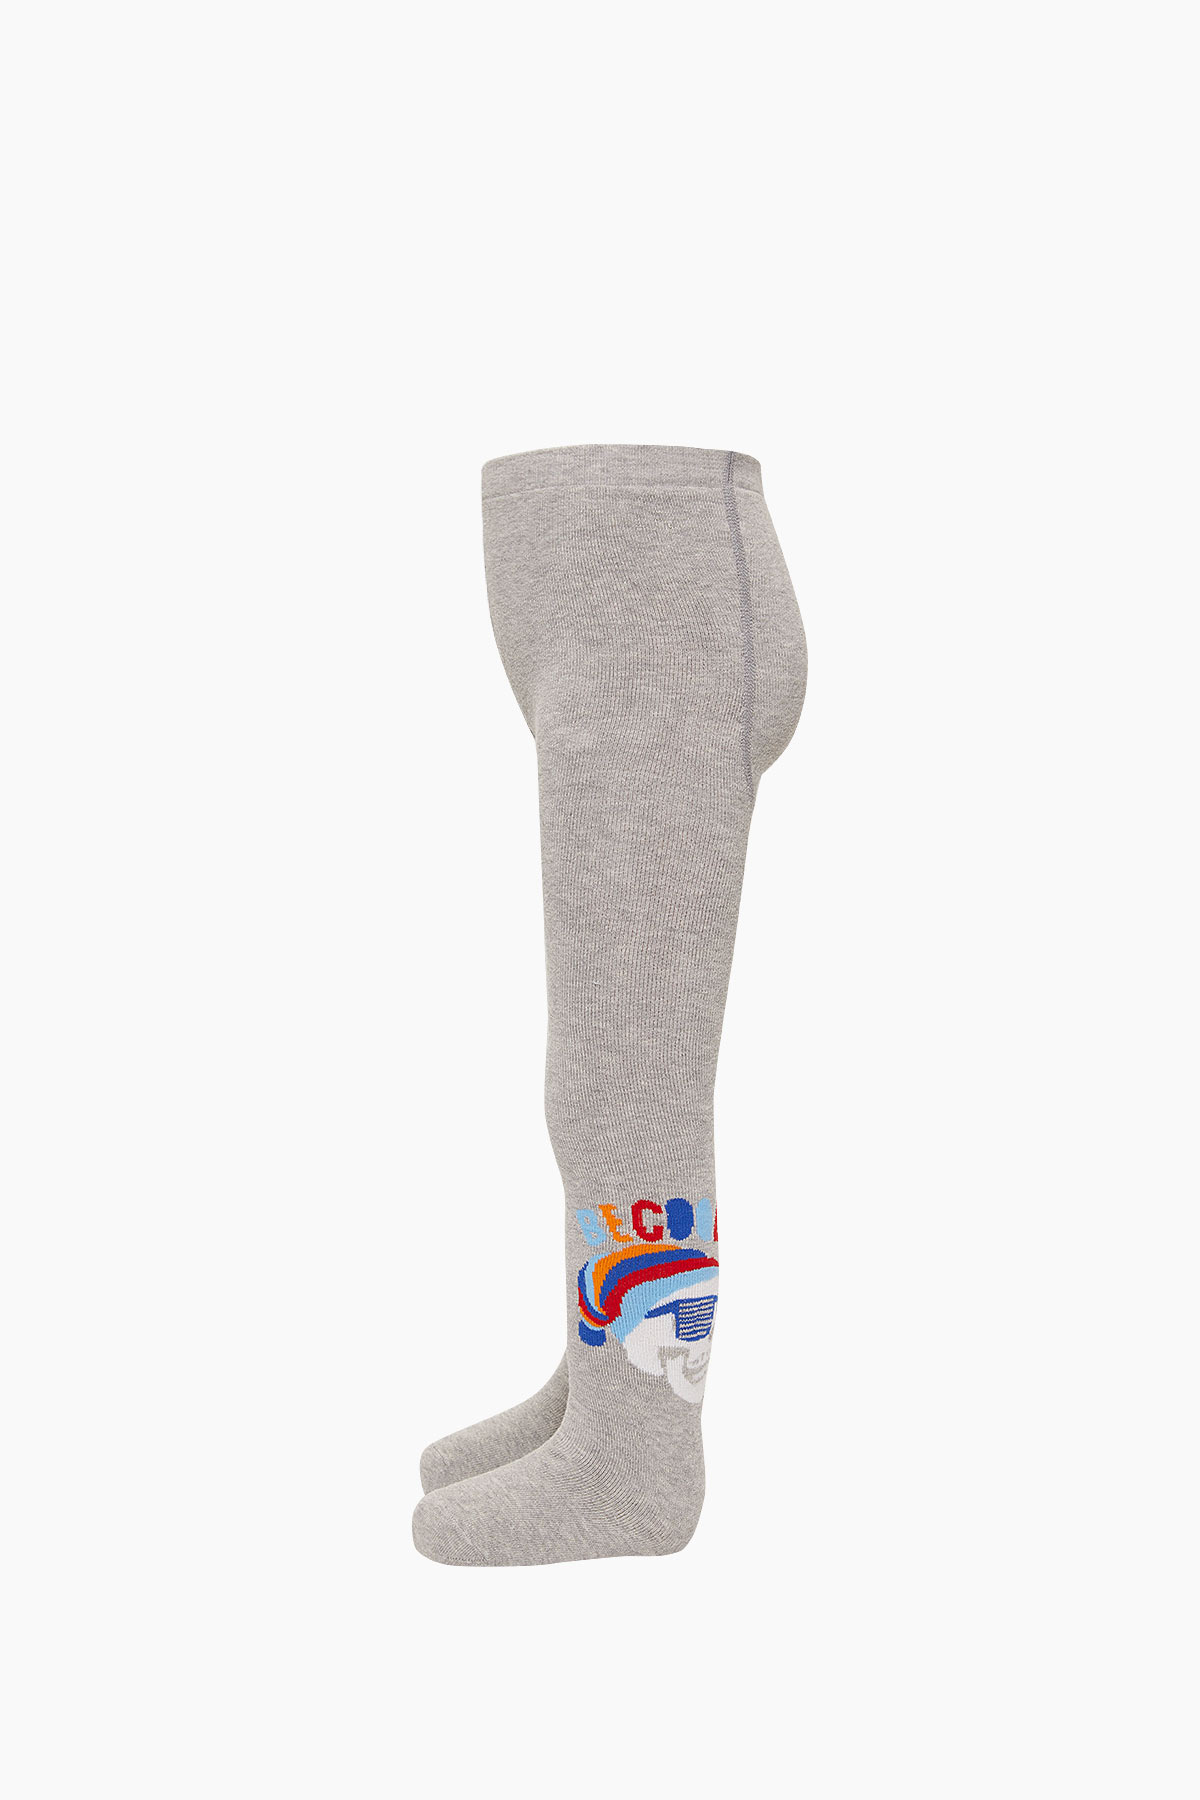 Bross Kuru Kafa Desenli Havlu Külotlu Çocuk Çorabı